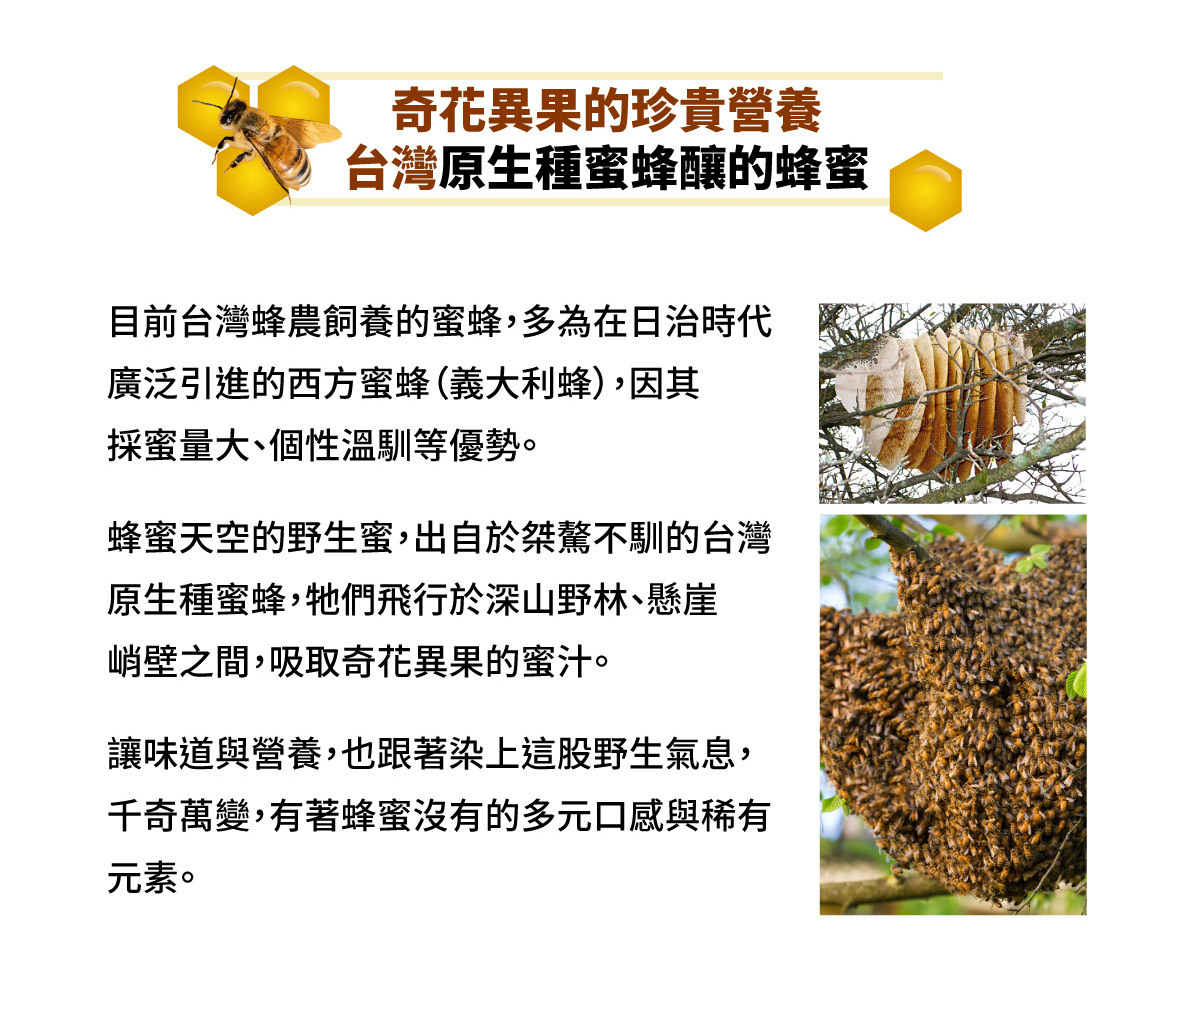 奇花異果的珍貴營養 台灣原生種蜜蜂釀的蜂蜜